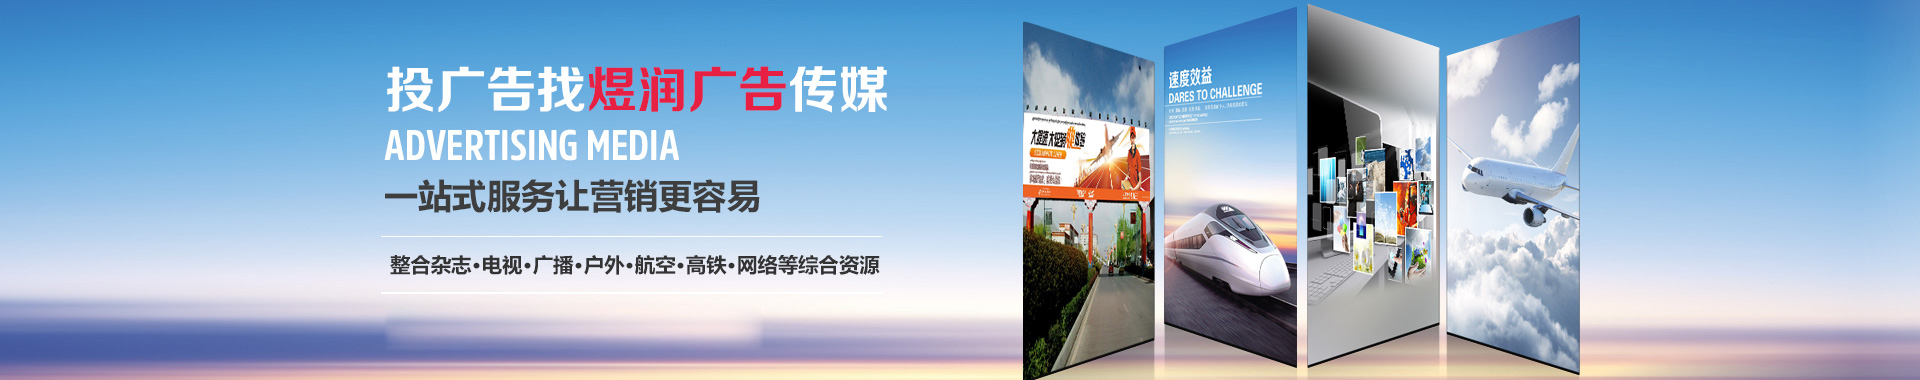 航空杂志 中国民航 广告服务电话